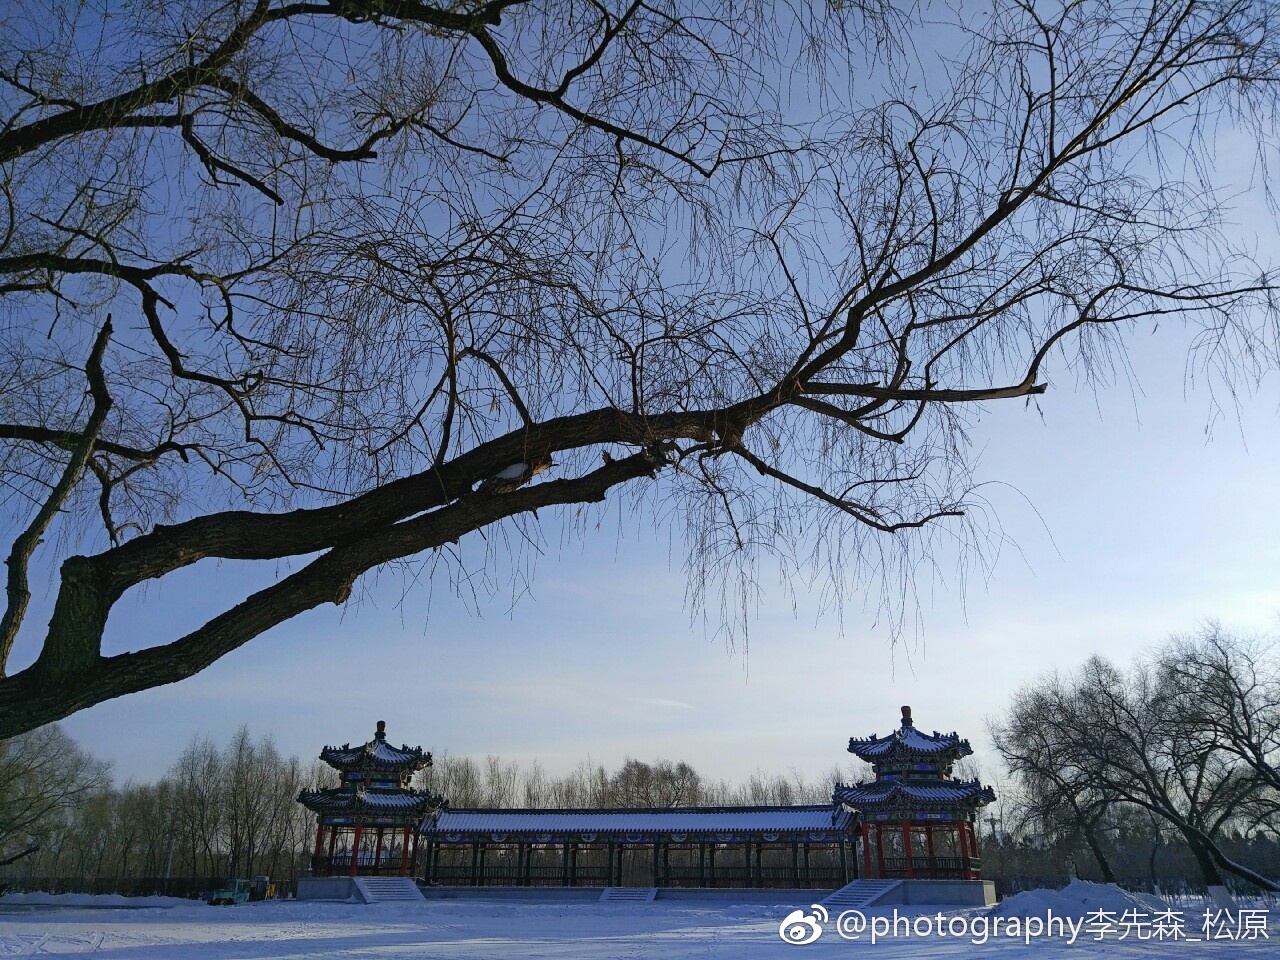 安基山水库，南京江宁汤山一个比较隐蔽小众景点，有着南京小千岛湖的美誉，风光旖旎美若画卷！ - 知乎